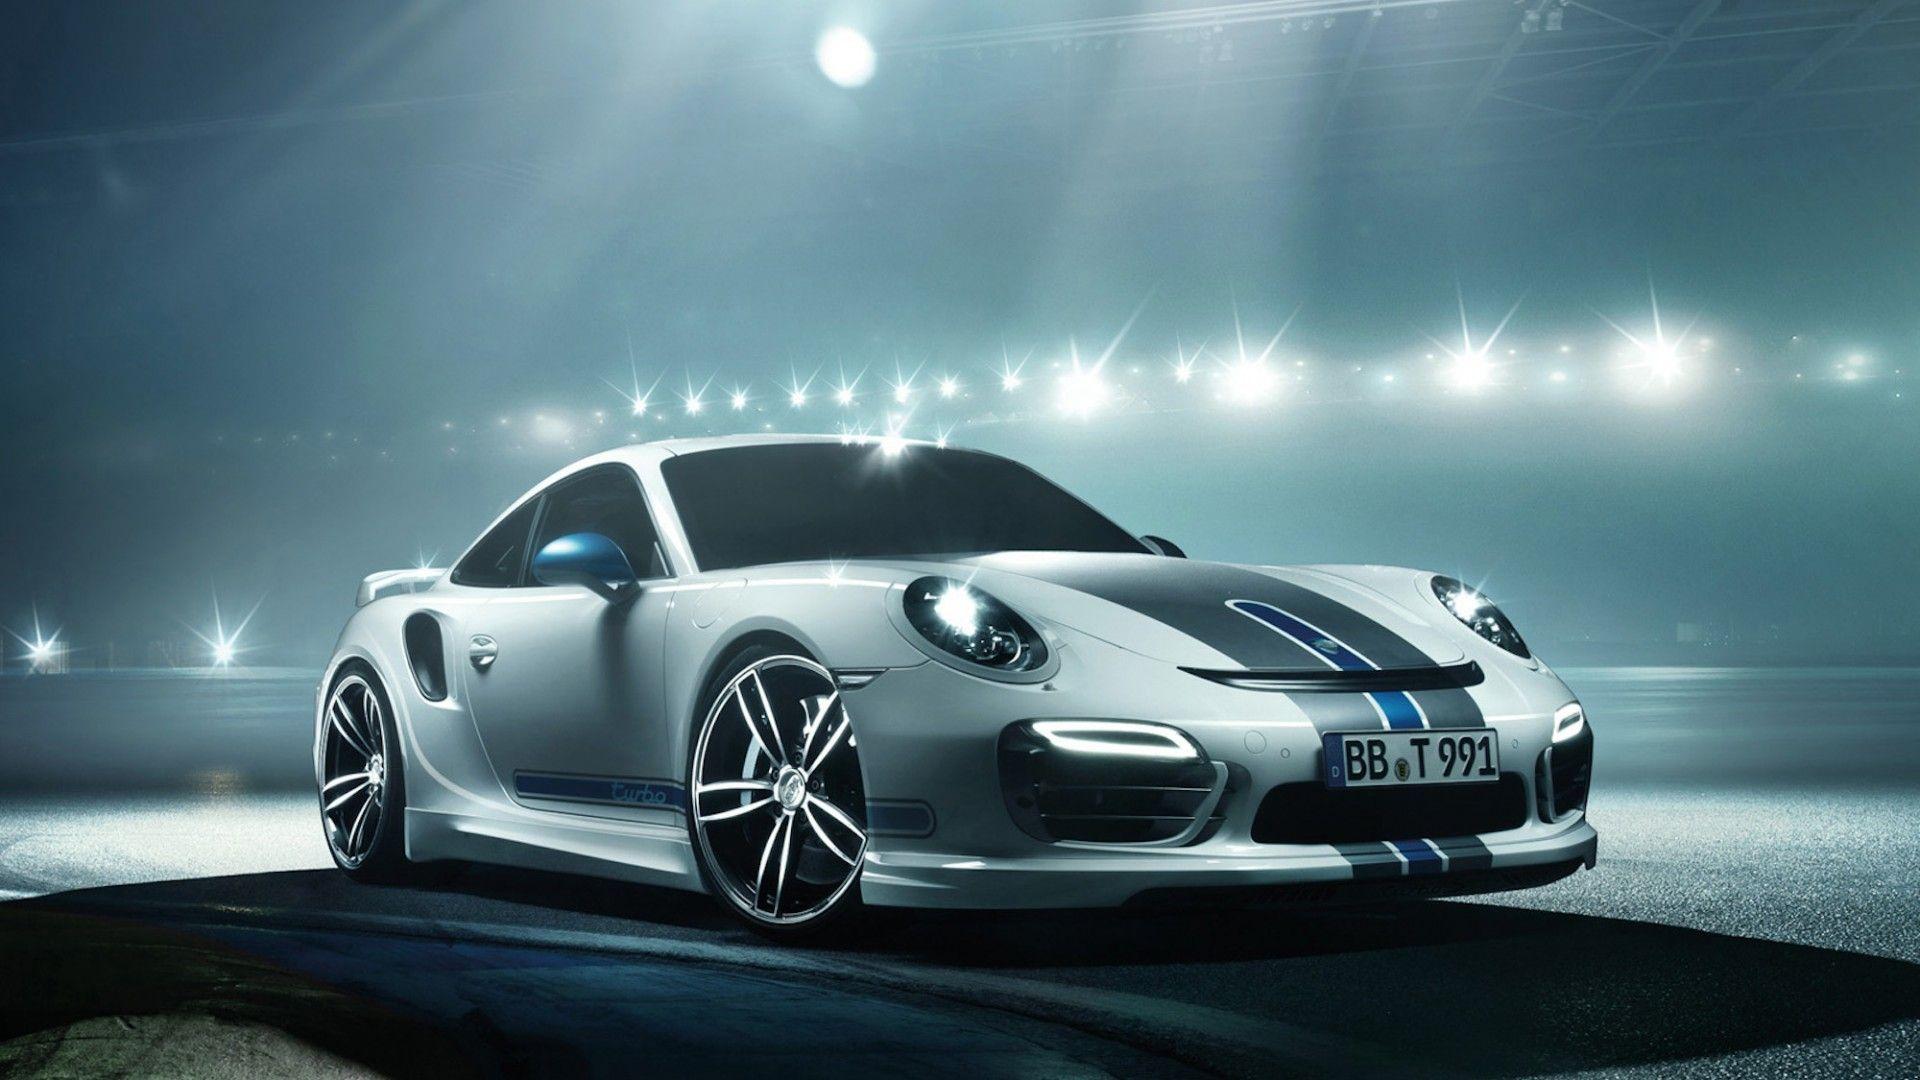 Cool Porsche Wallpapers Top Free Cool Porsche Backgrounds Wallpaperaccess